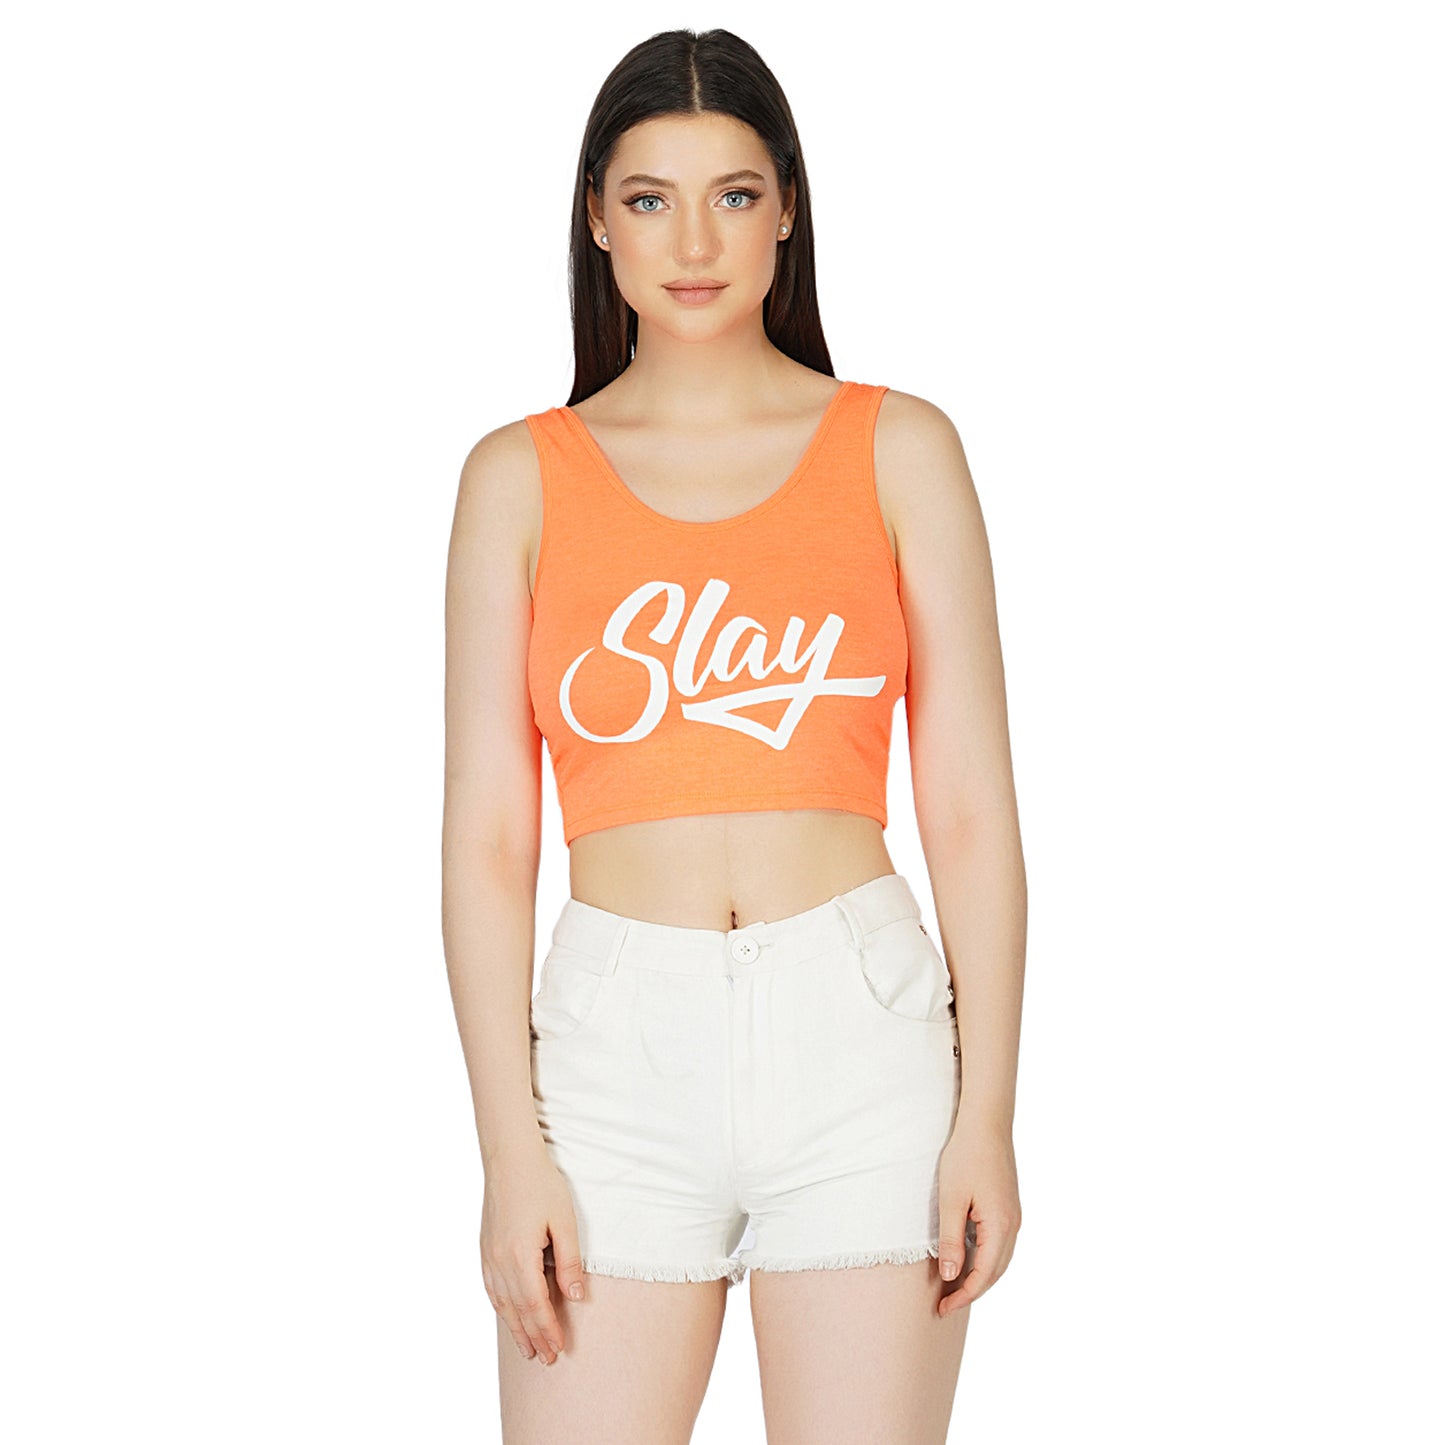 SLAY. Women's Neon Orange Printed Crop Top